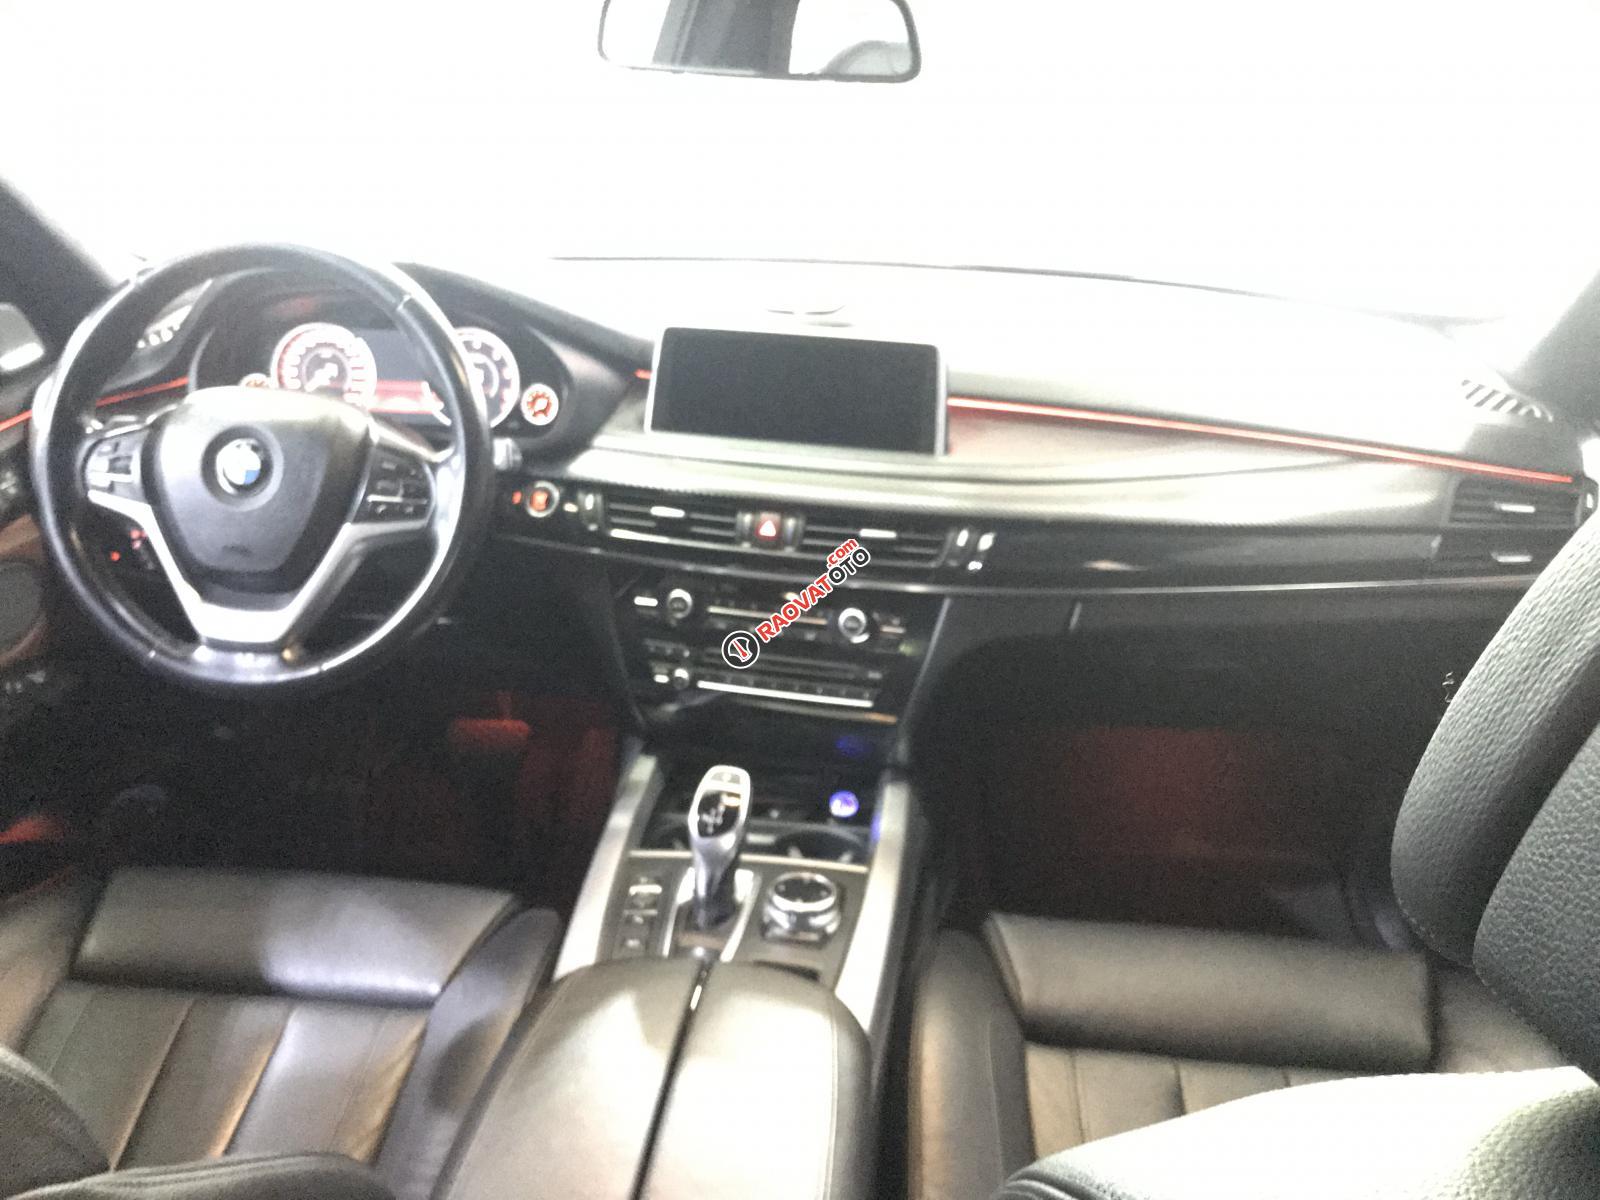 Cần bán xe BMW X5 3.0 sản xuất năm 2014, màu xám (ghi), nhập khẩu nguyên chiếc-0